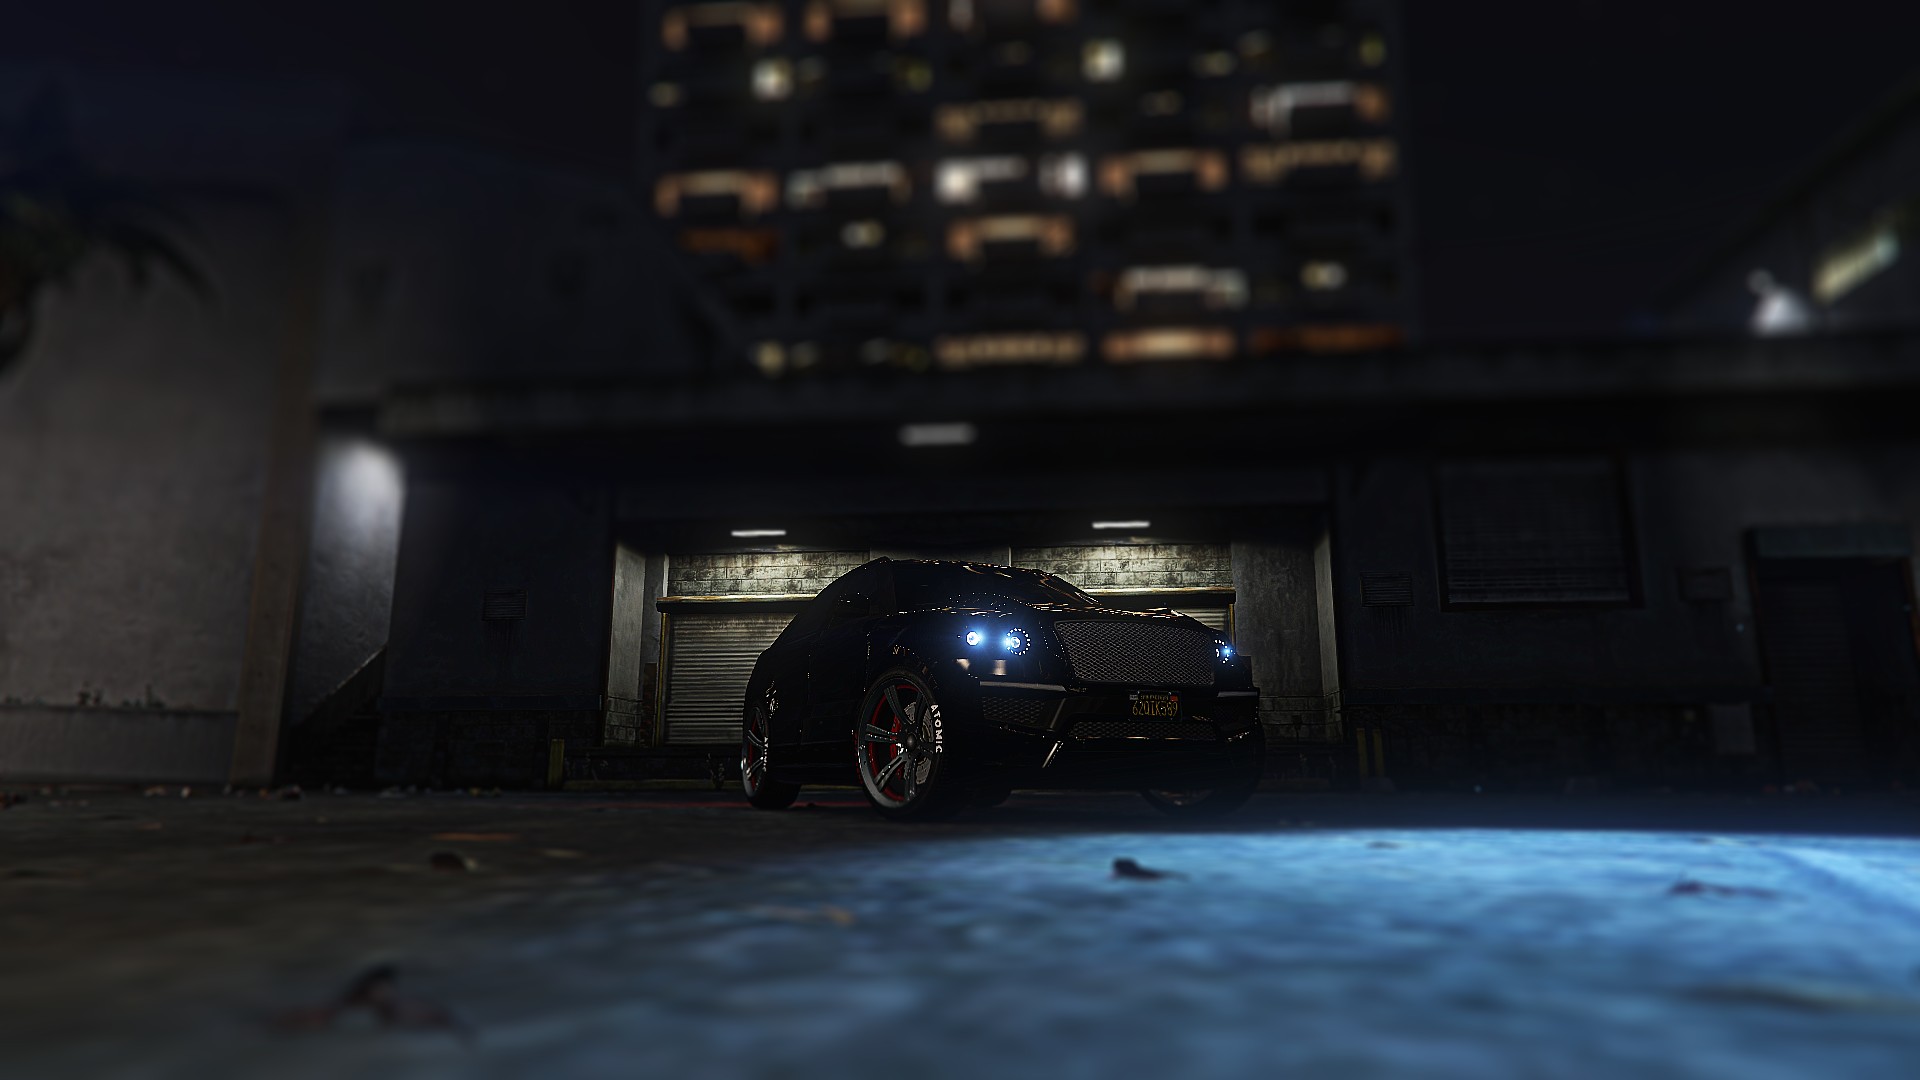 Grand Theft Auto V, SUV, Blurred, LED headlight Wallpaper